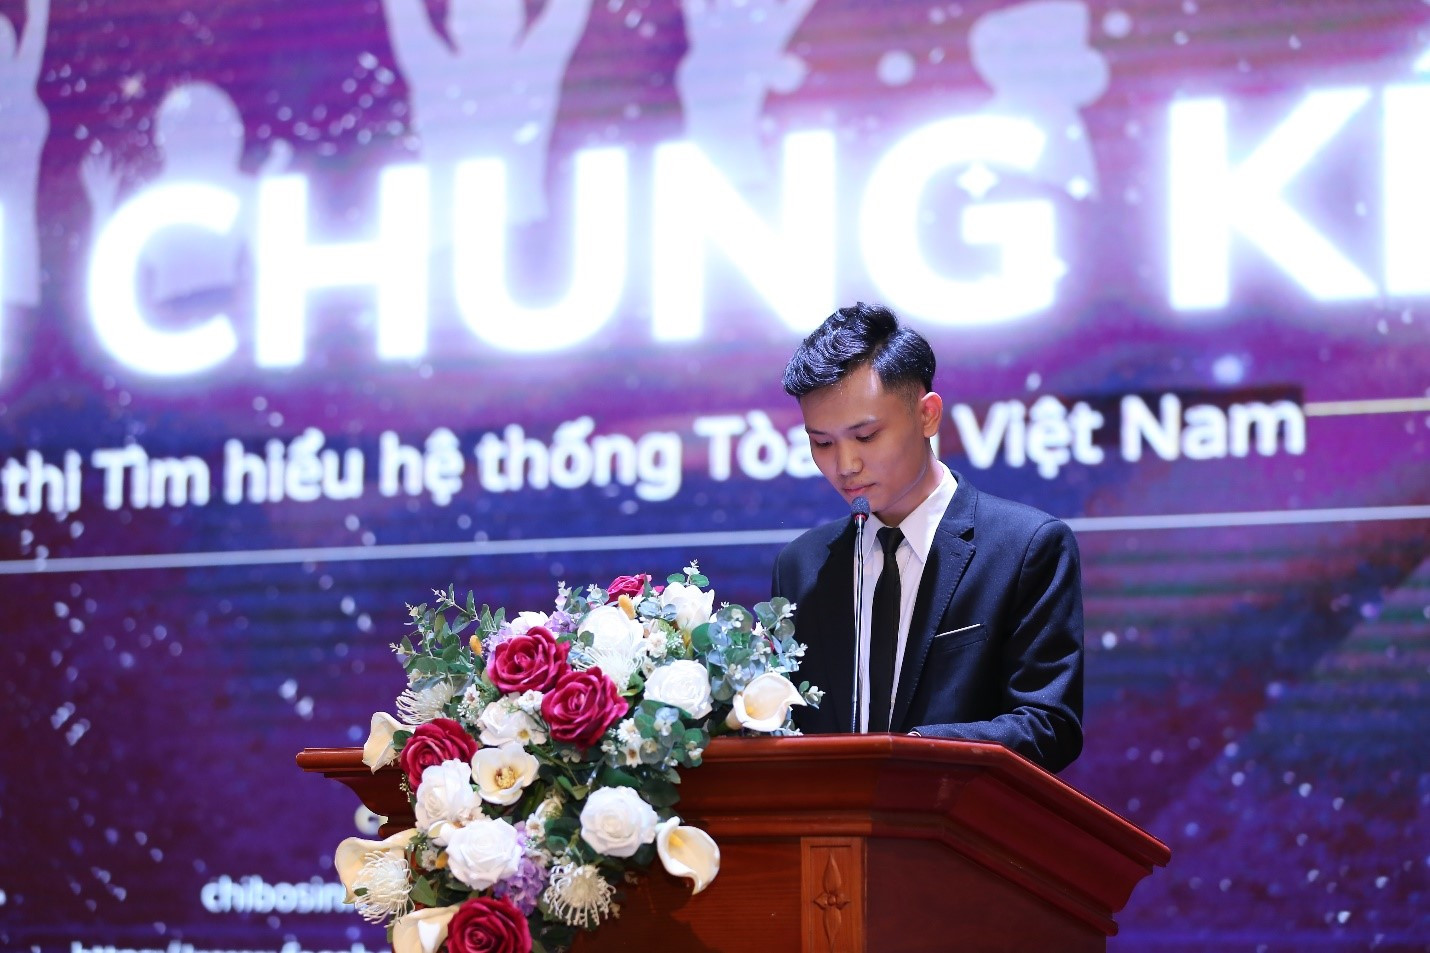 Chung kết cuộc thi “Tìm hiểu hệ thống Tòa án Việt Nam